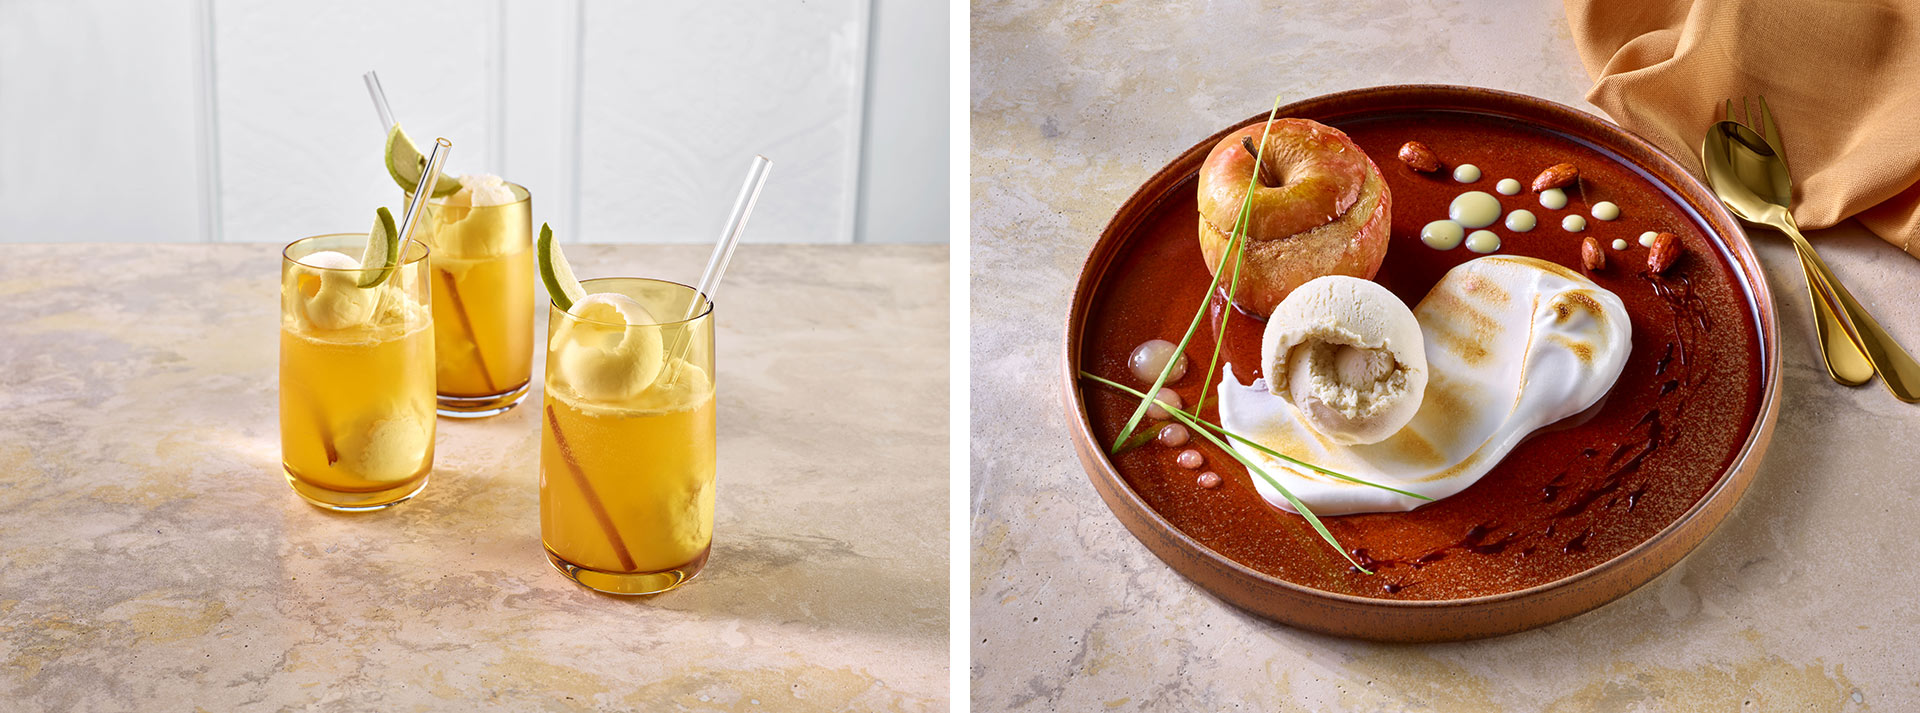 Kreativ und köstlich: Der Lillet-Bratapfel-Aperitif und das Bratapfel-Dessert mit veganem Vanille-Eis. Foto beigestellt